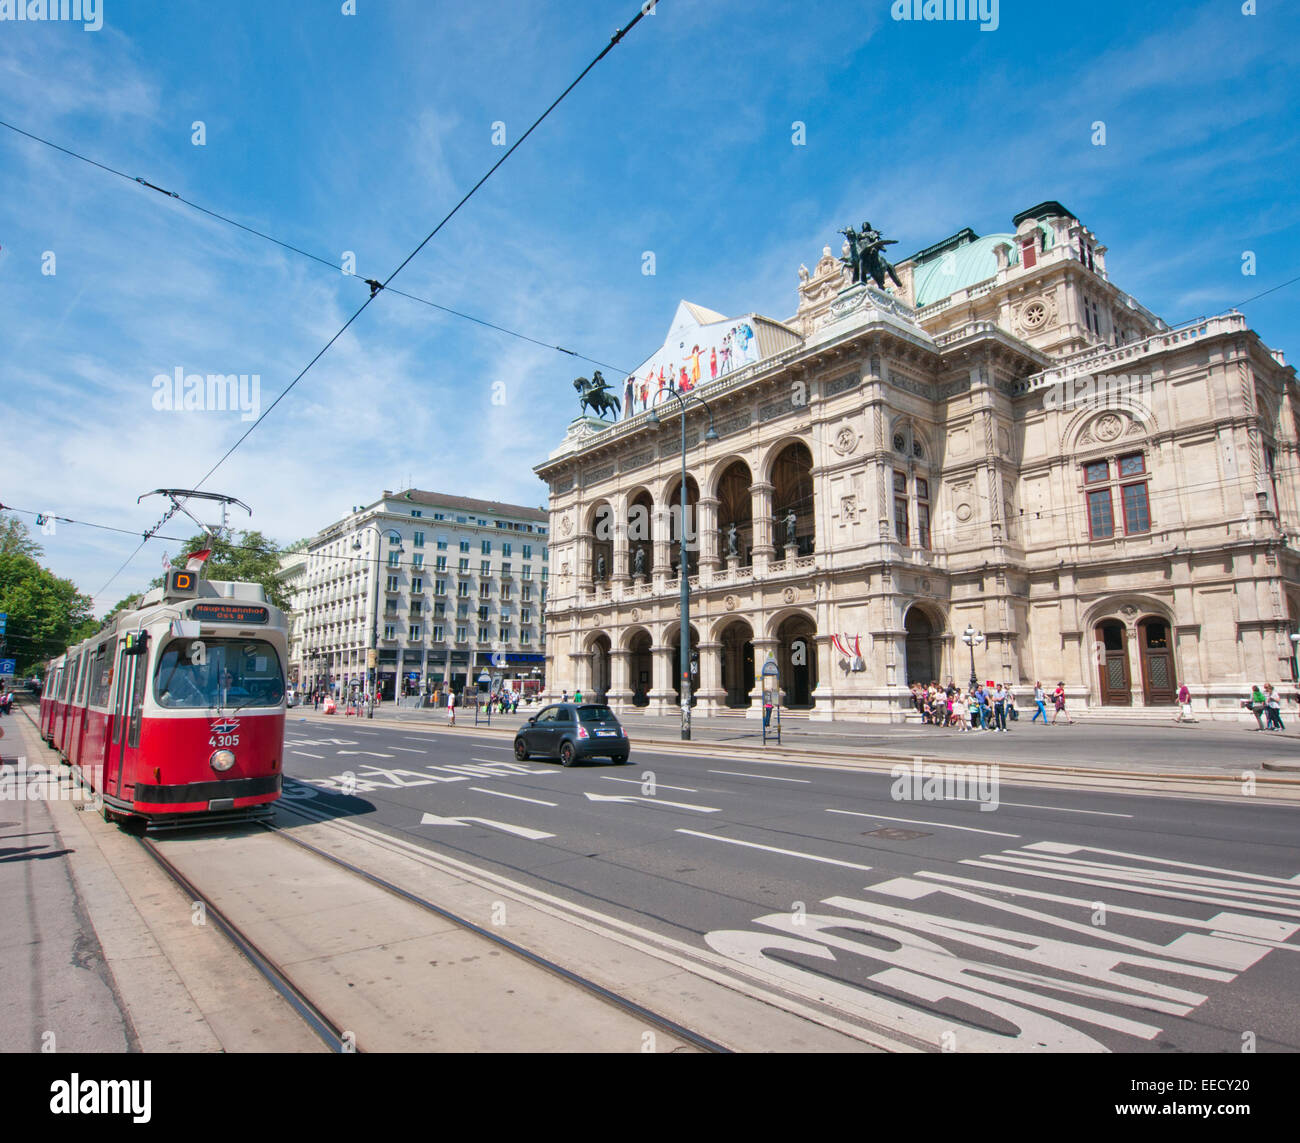 Un tram passant l'Opéra de Vienne en Autriche Banque D'Images